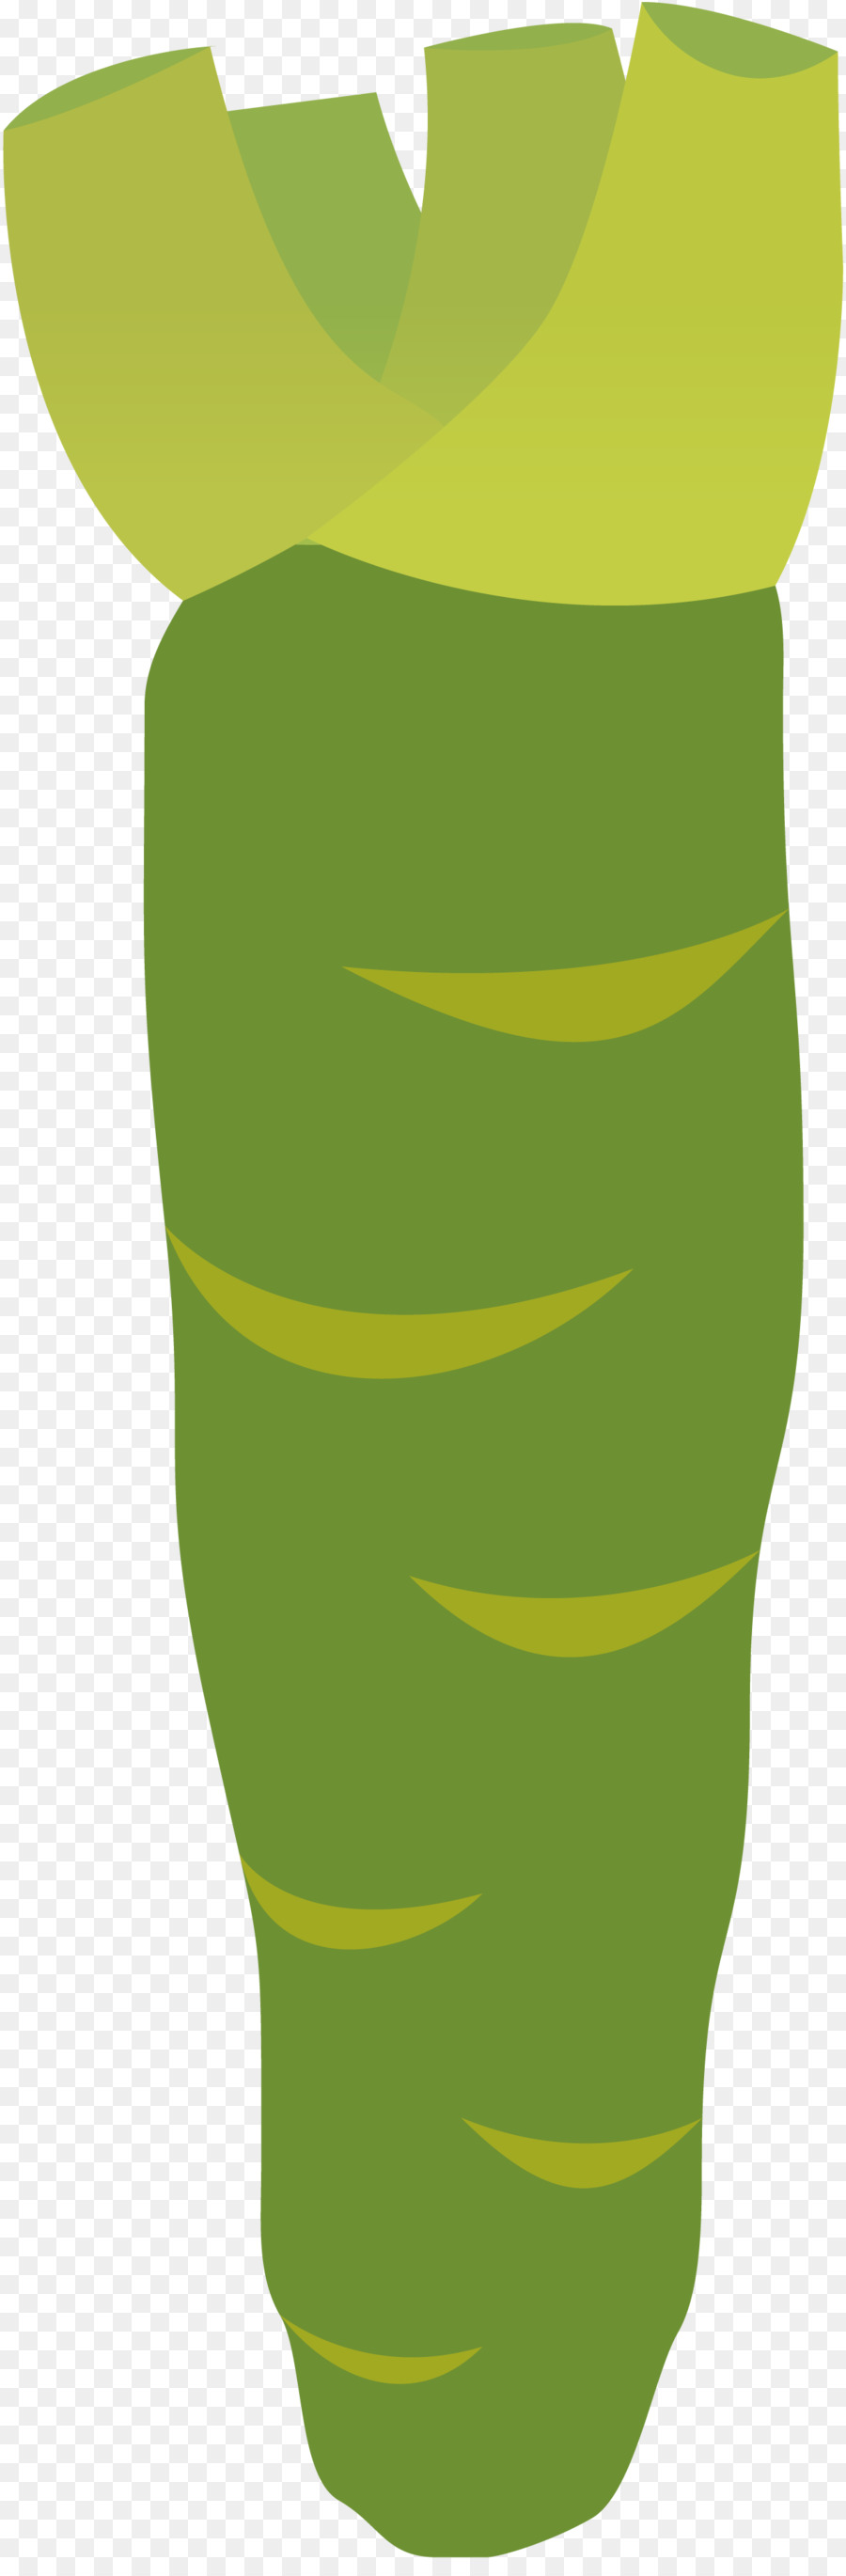 Illustrazione ClipArt Immagine Grafica vettoriale Wasabi - senape al rafano senape wasabi